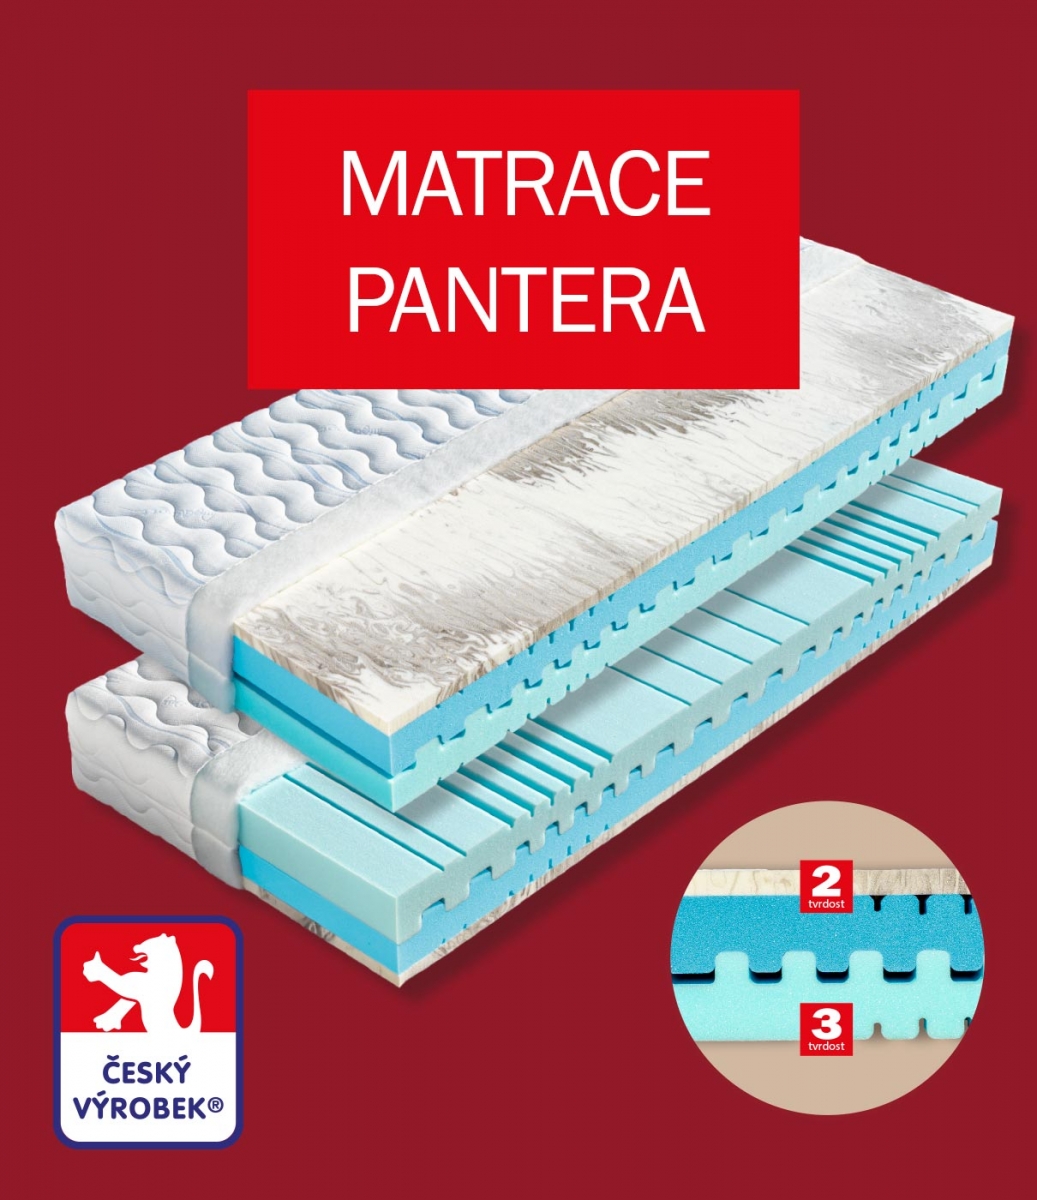 Matrace Pantera